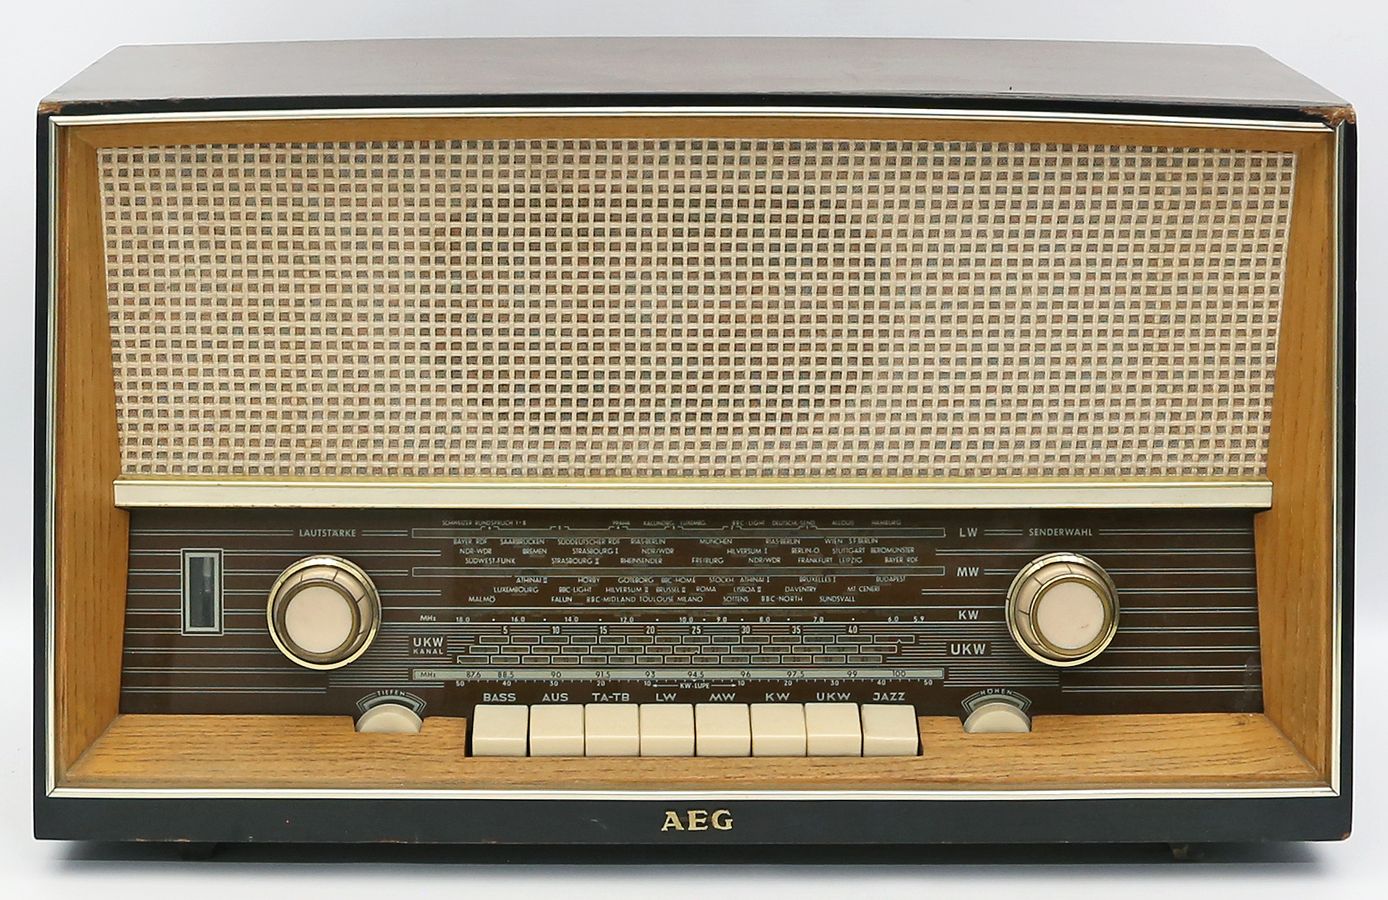 Altes Röhrenradio im Holzgehäuse "AEG".